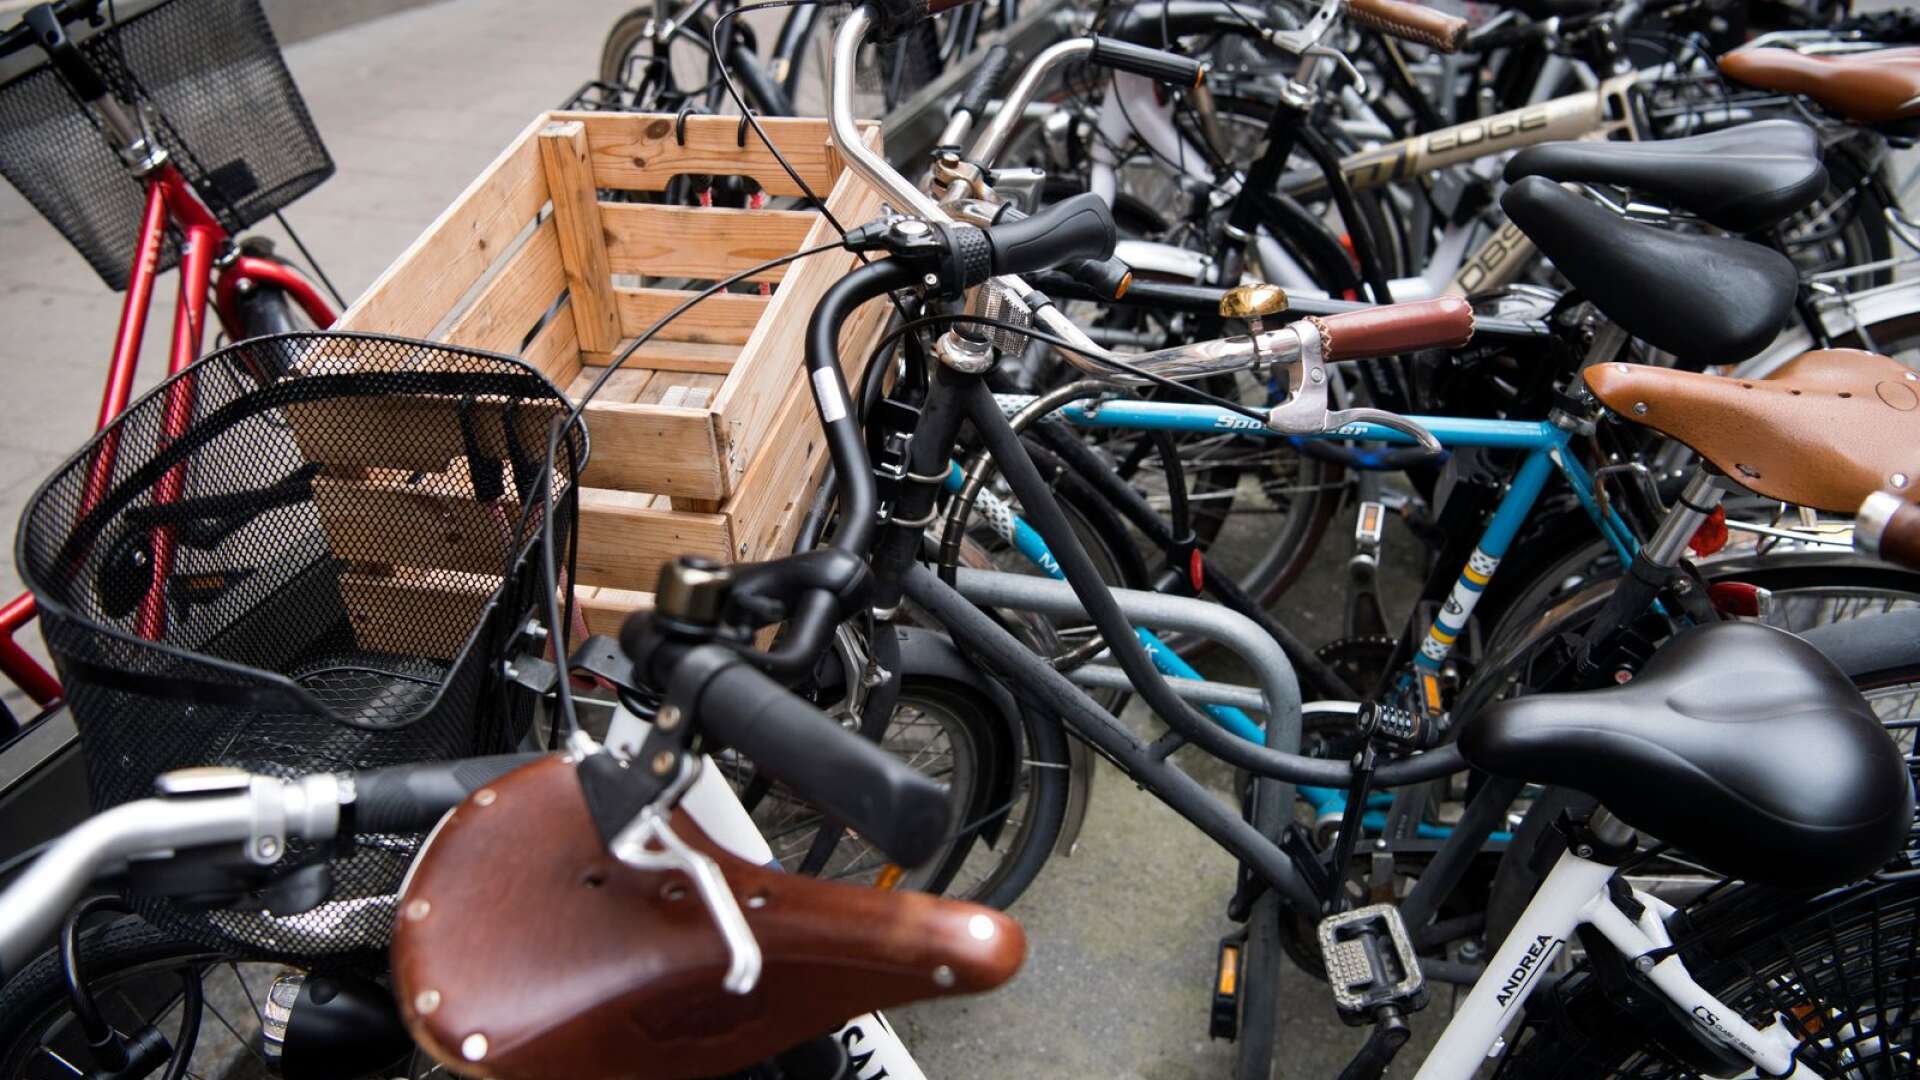 Cykelstölderna ökade under förra året. I Skövde gjordes 349 anmälningar om cykelstöld enligt siffror från Brå som If har sammanställt.